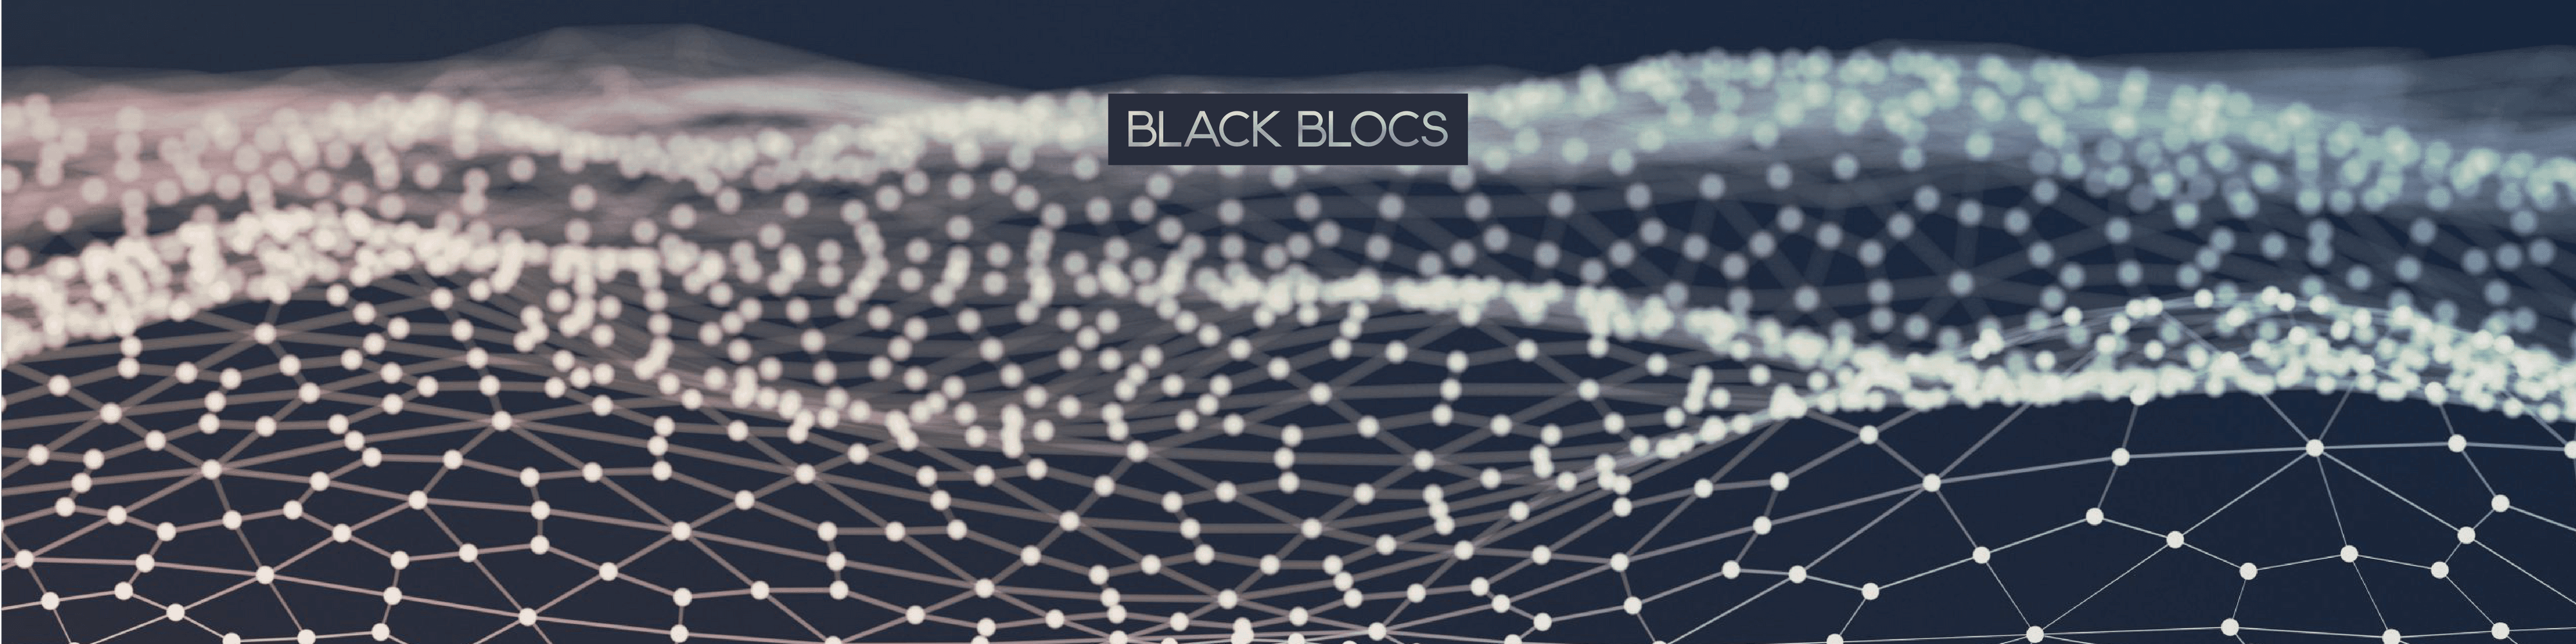 Black-Blocs-1 banner